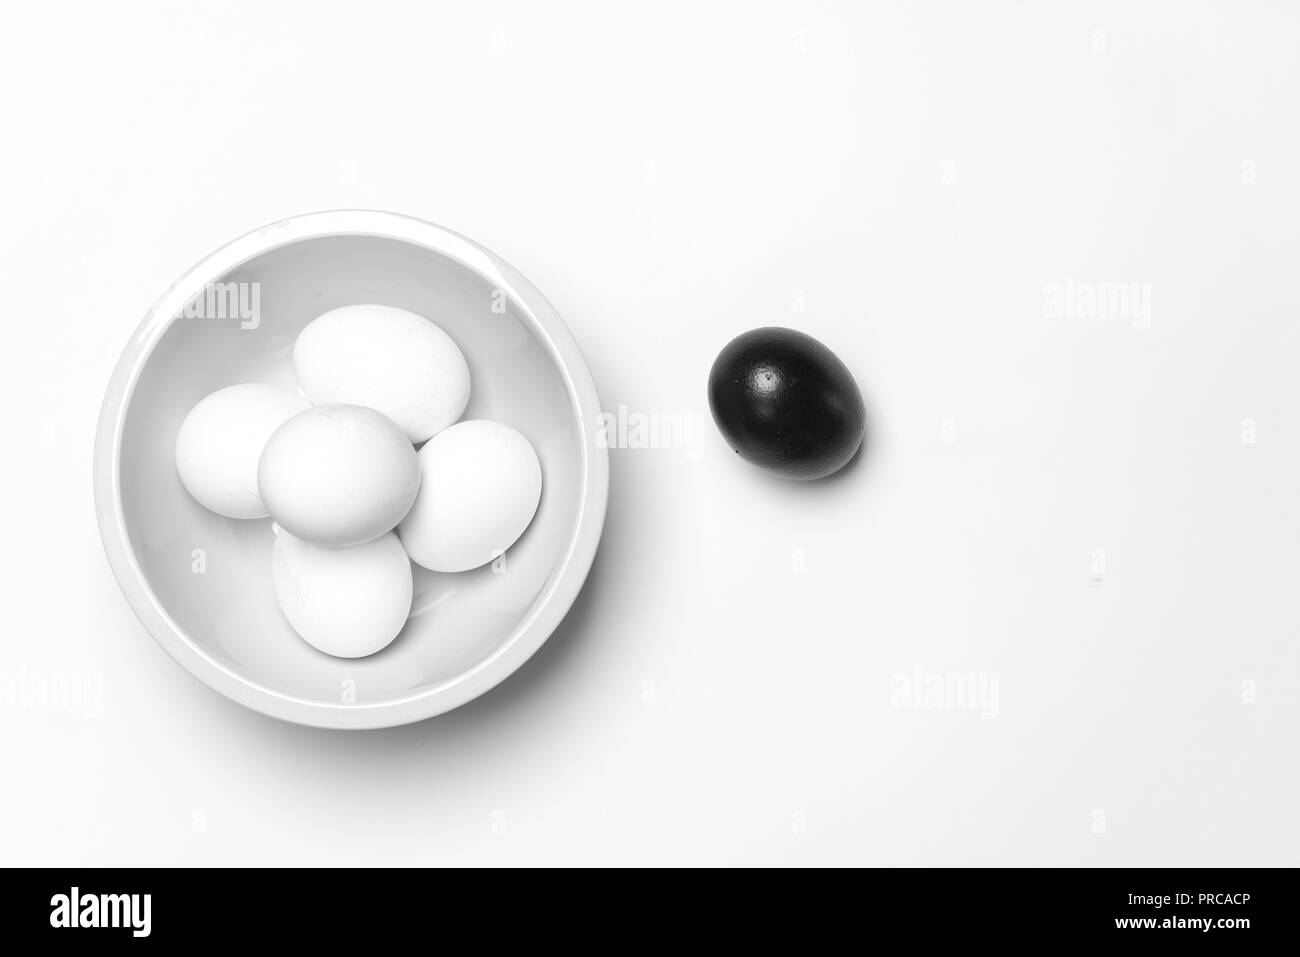 Su uno sfondo bianco, a pochi le uova bianche uno nero che simboleggia la diversità, separazione e leadership Foto Stock